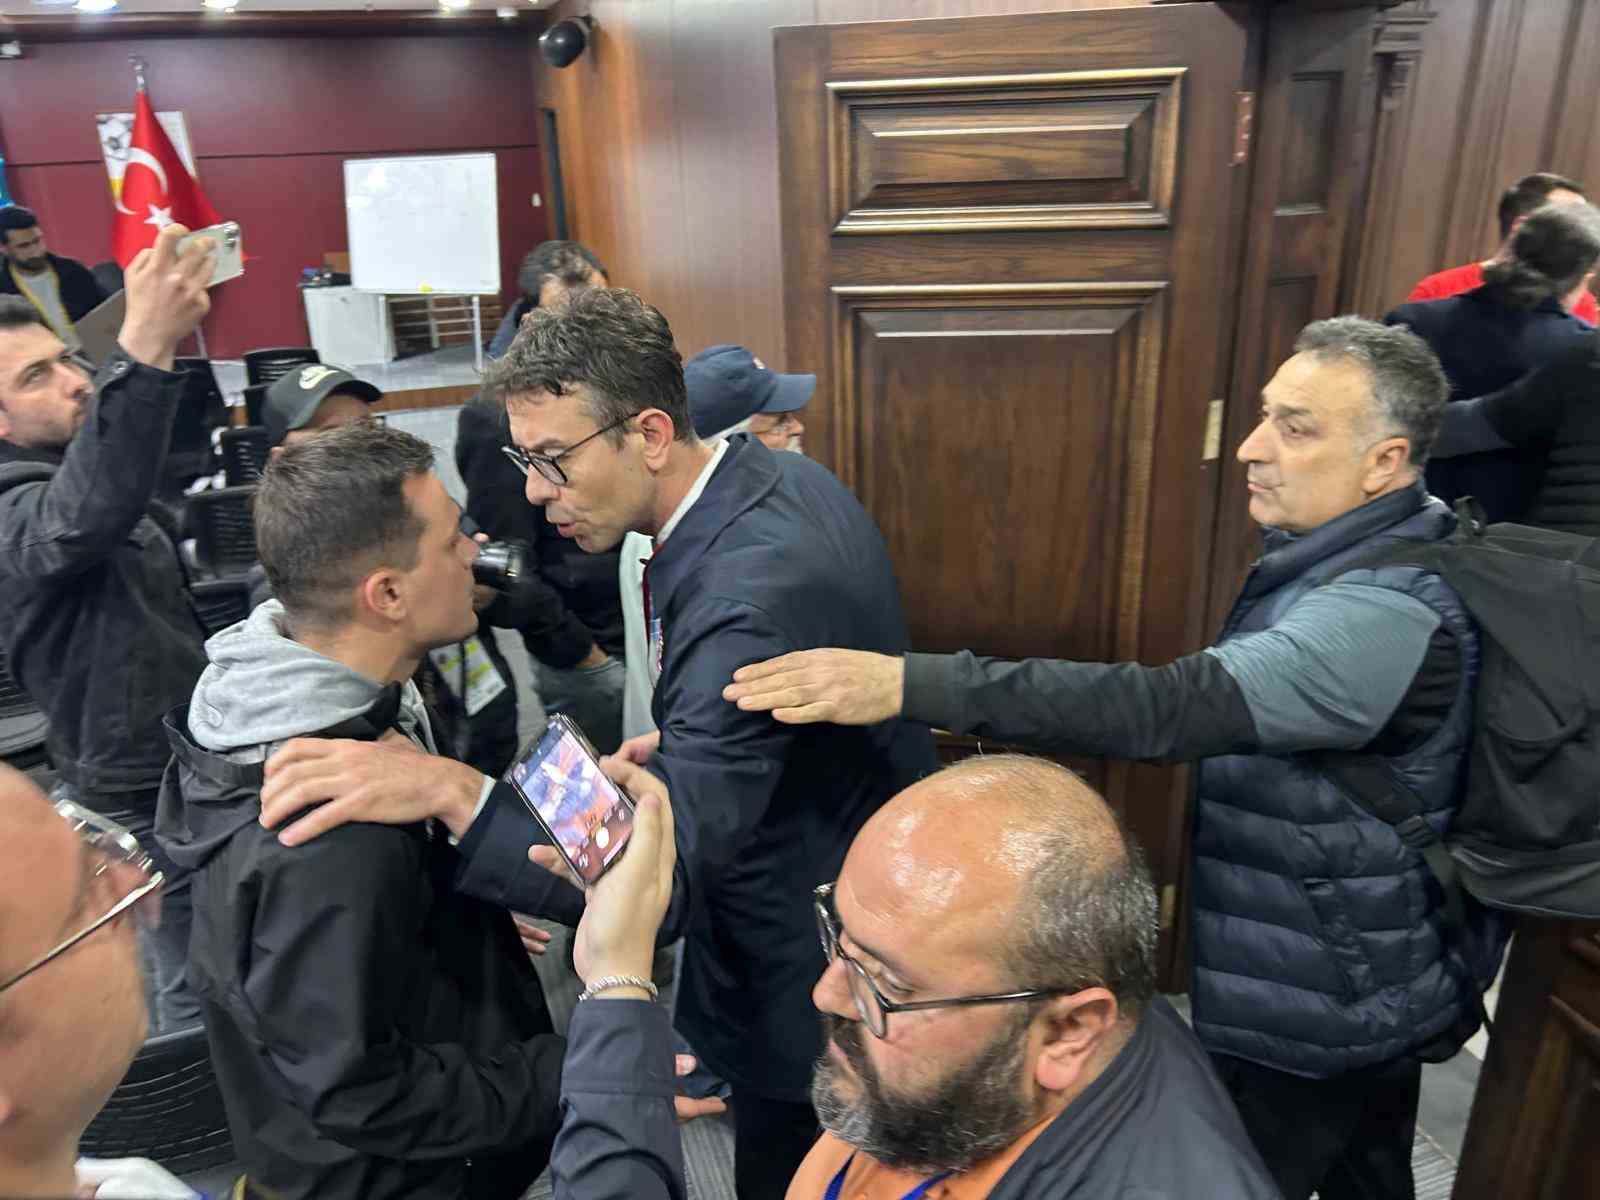 kocaelispor teknik direktörü mustafa gürsel’in basın toplantısı müzik yüzünden yarım kaldı